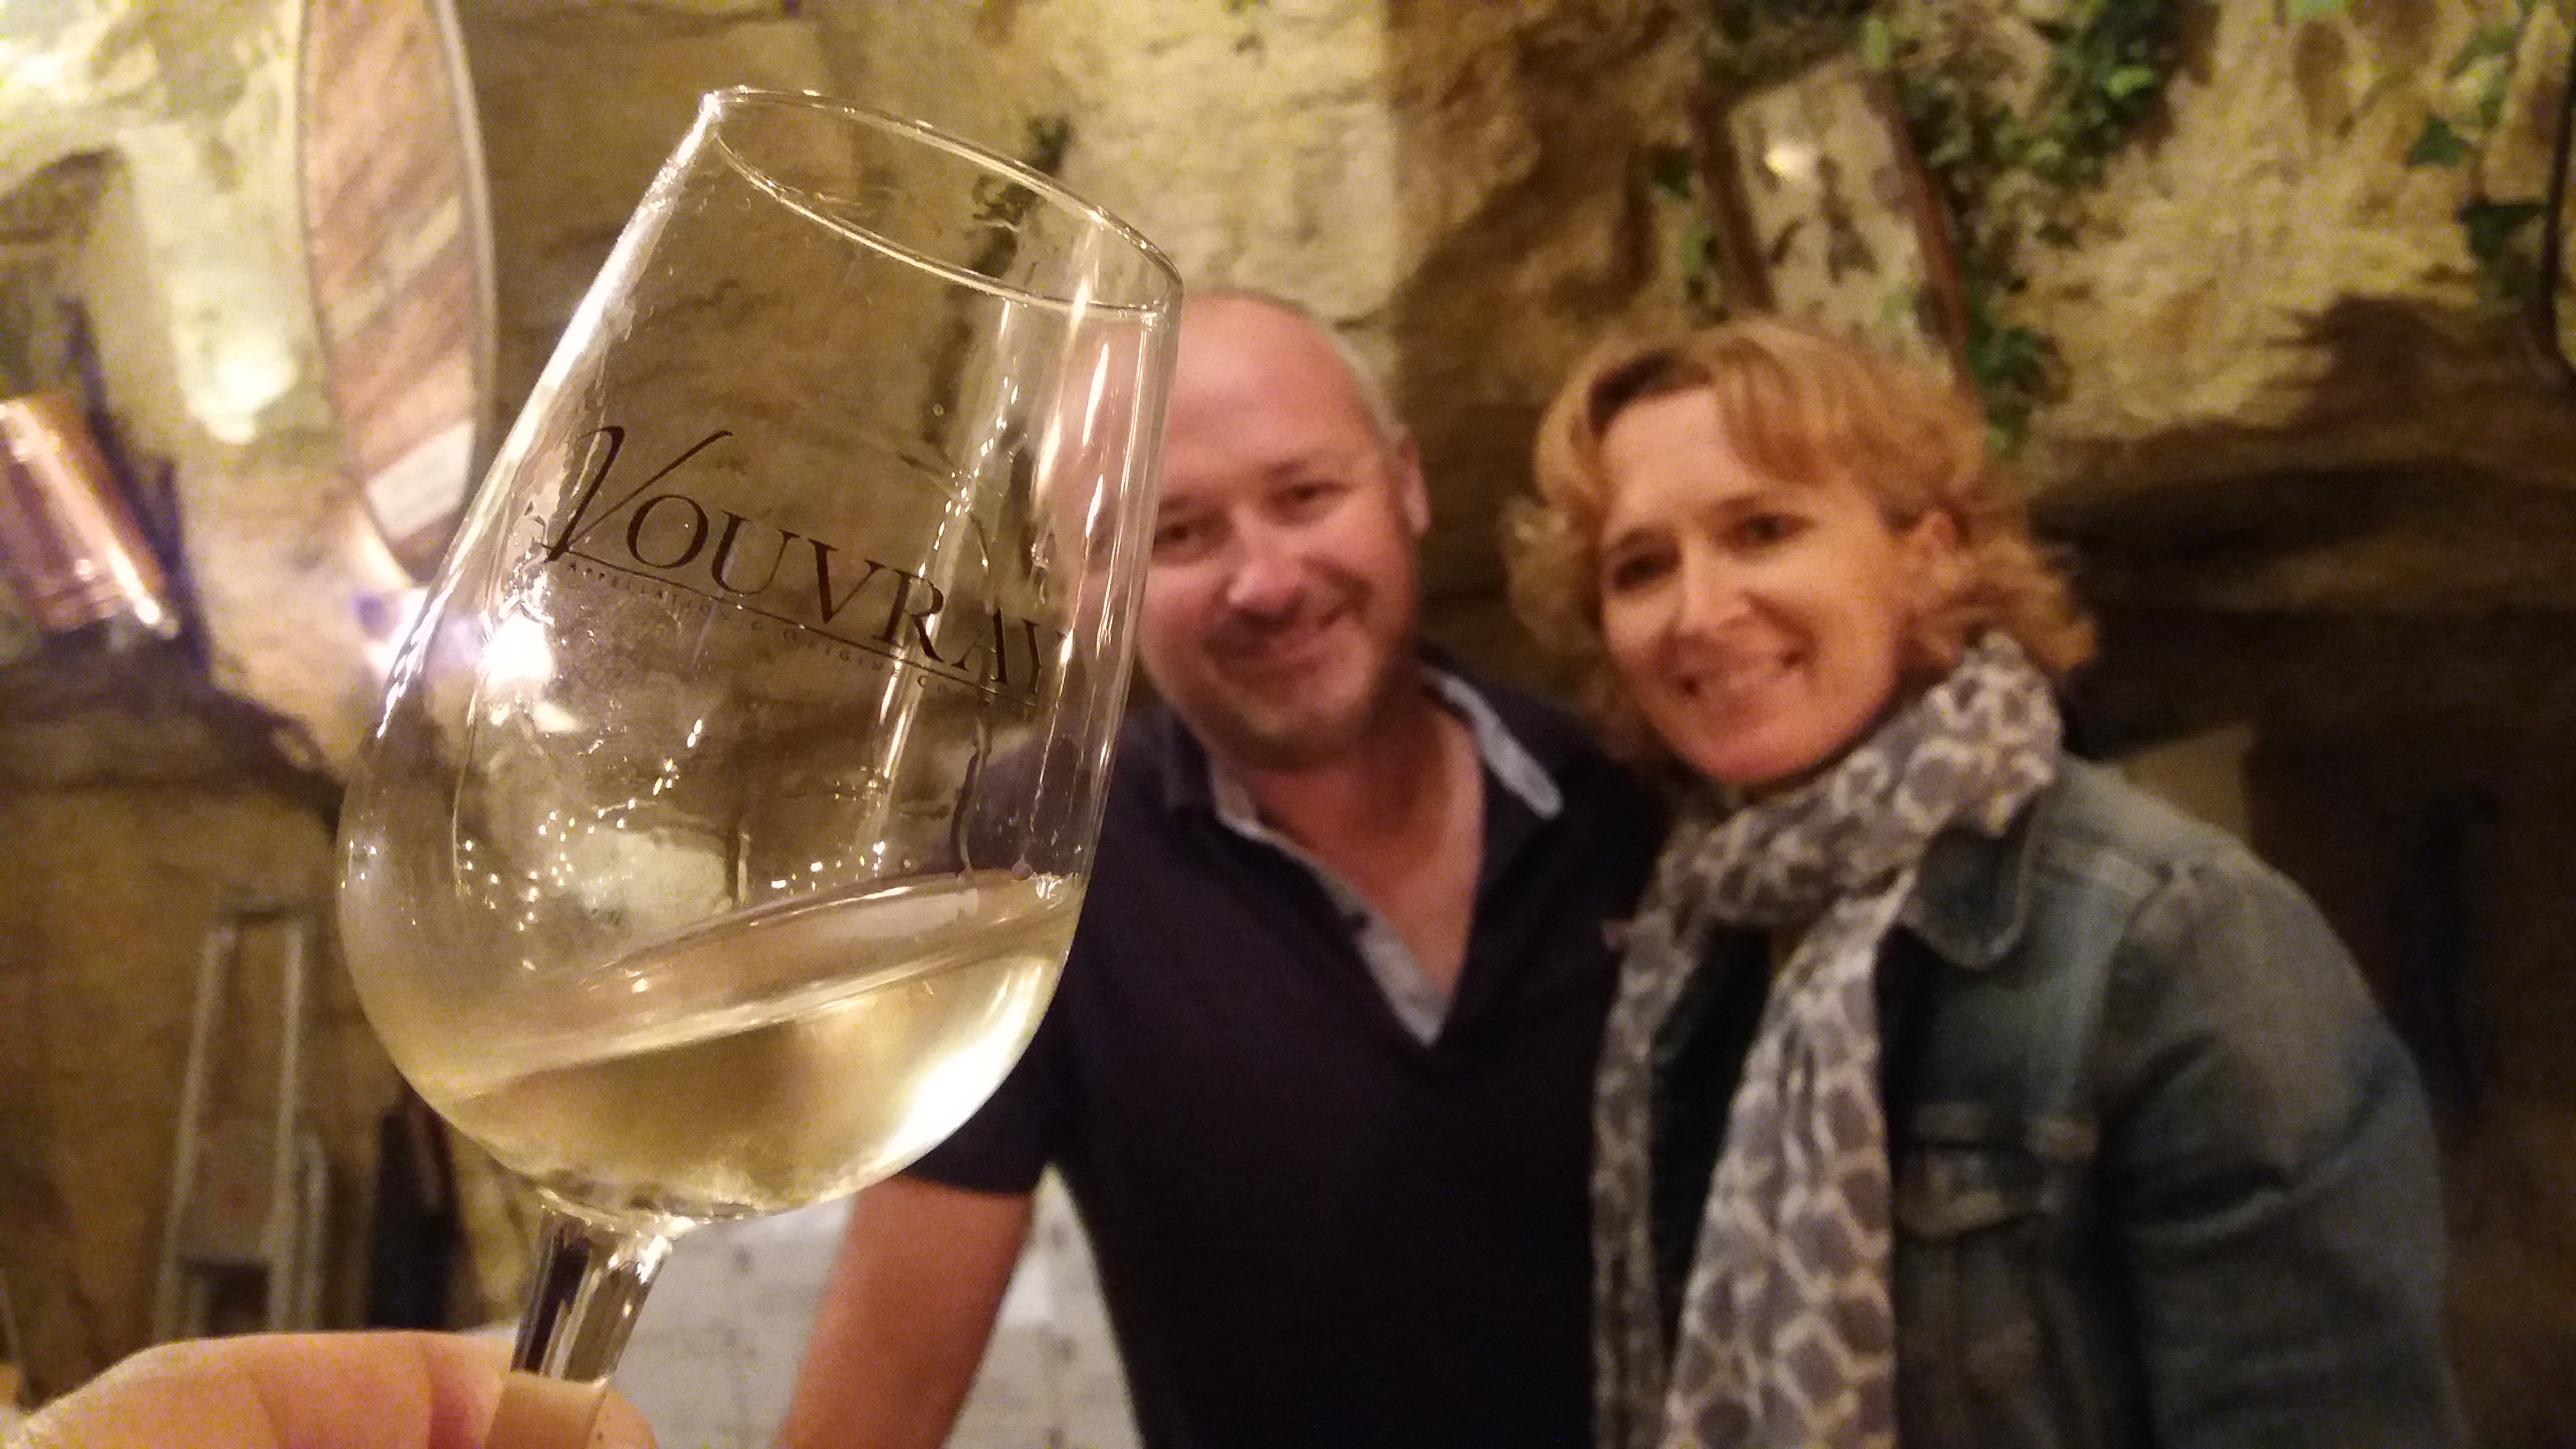 Foire internationale des vins � vouvray ao�t 2018. L'AOC Vouvray f�te ses 82 ans. Sur le chenin des vacances d'�t�, la foire aux vins blancs de Vouvray du mois d'aout.